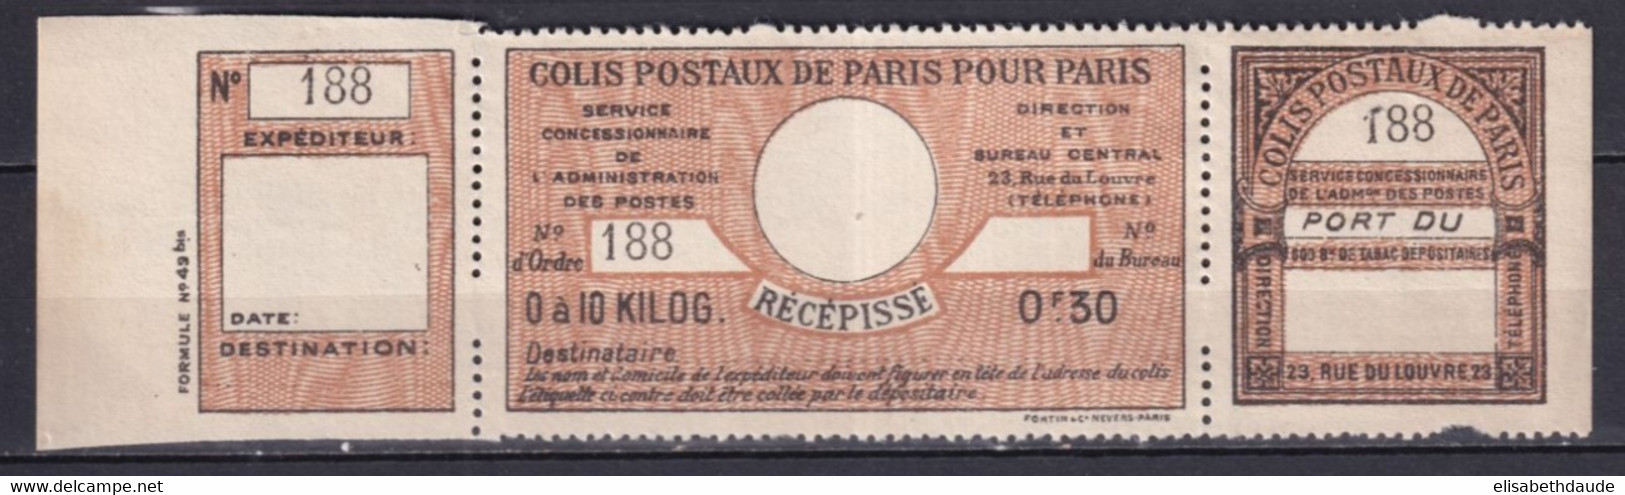 COLIS POSTAUX PARIS POUR PARIS  - 1917 - MAURY N°42 (*) NSG RARE COMPLET ! - COTE 2009 = 150 EUR. - Ongebruikt